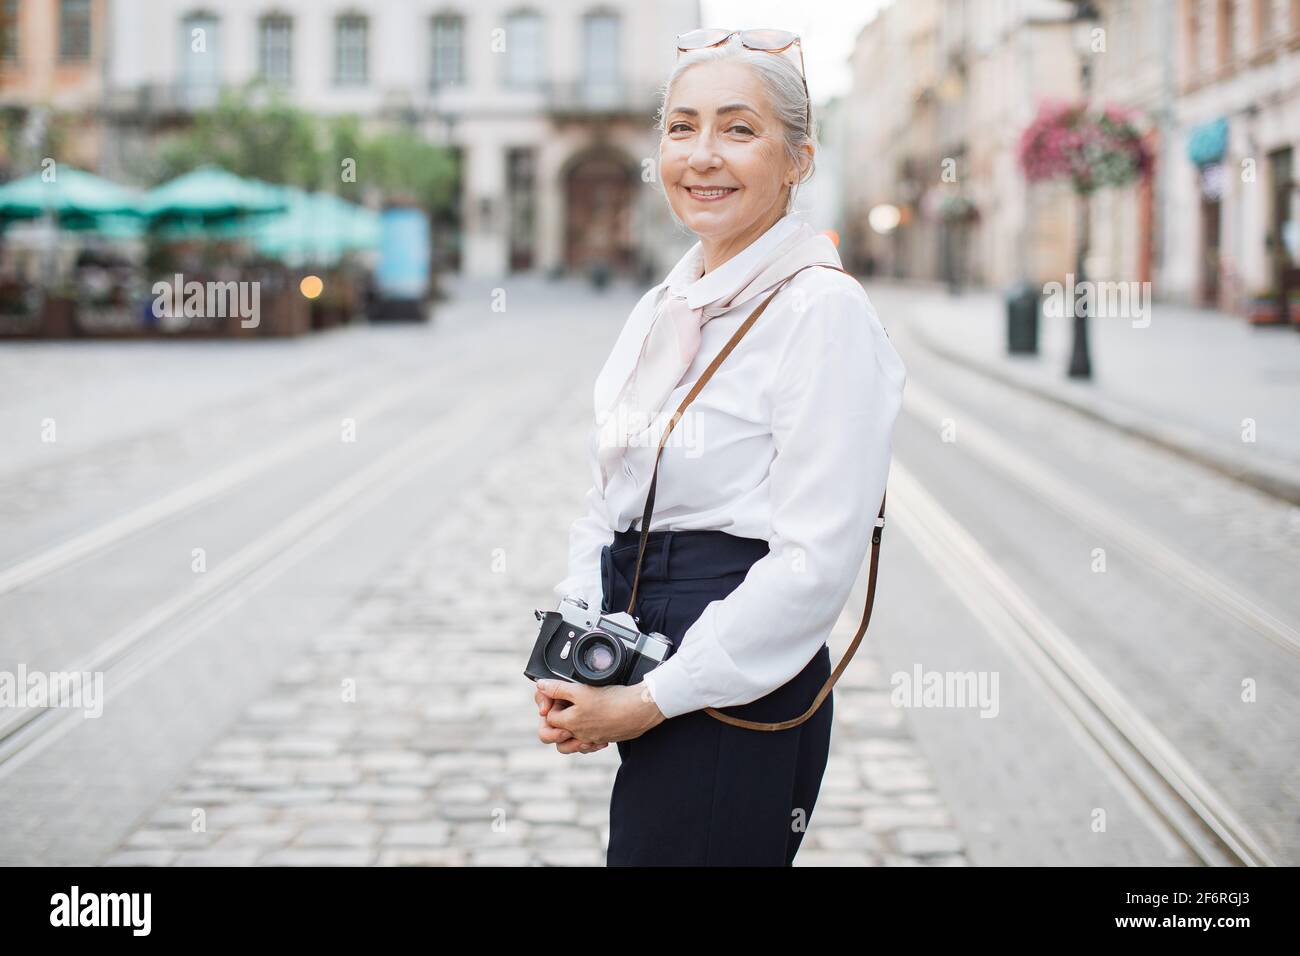 Mujer sonriente con ropa elegante que sostiene una cámara fotográfica retro está de pie al aire libre. Calle de la ciudad sobre fondo borroso. Mujer activa en la jubilación Fotografía